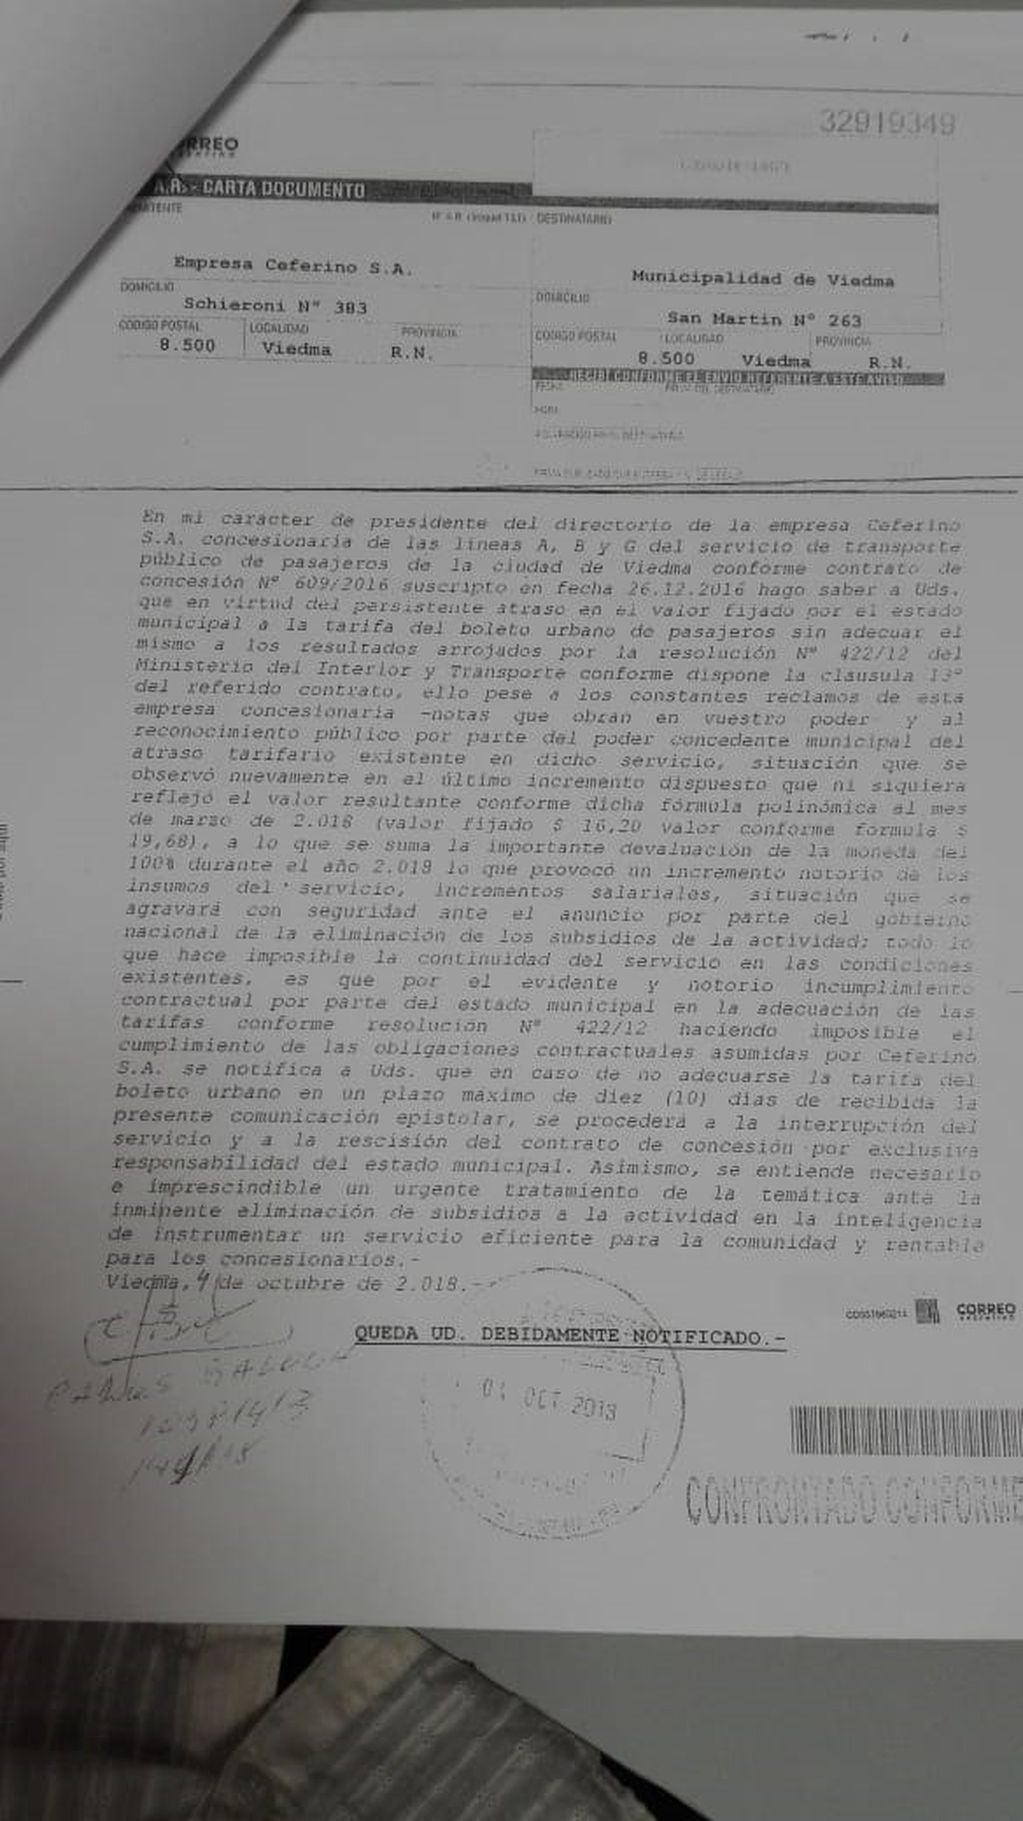 Carta documento a la Municipalidad de Viedma.